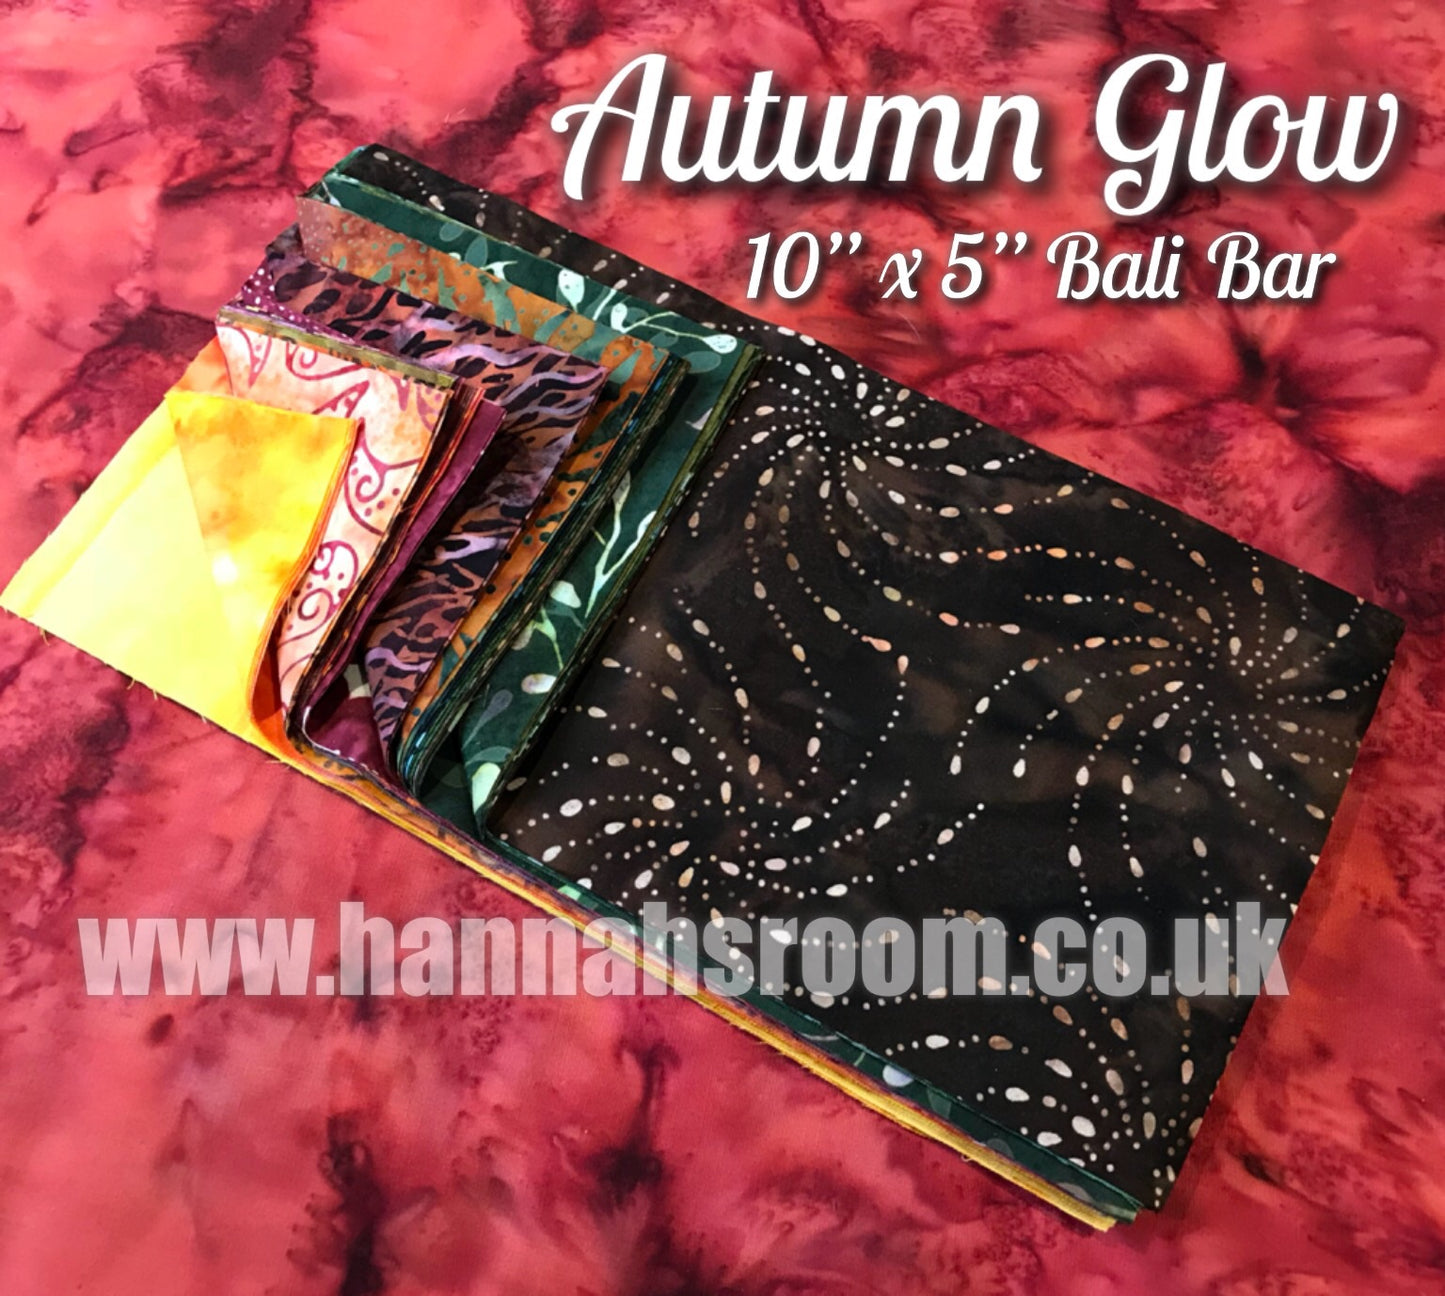 Autumn Glow 10” X 5” Bali Bar